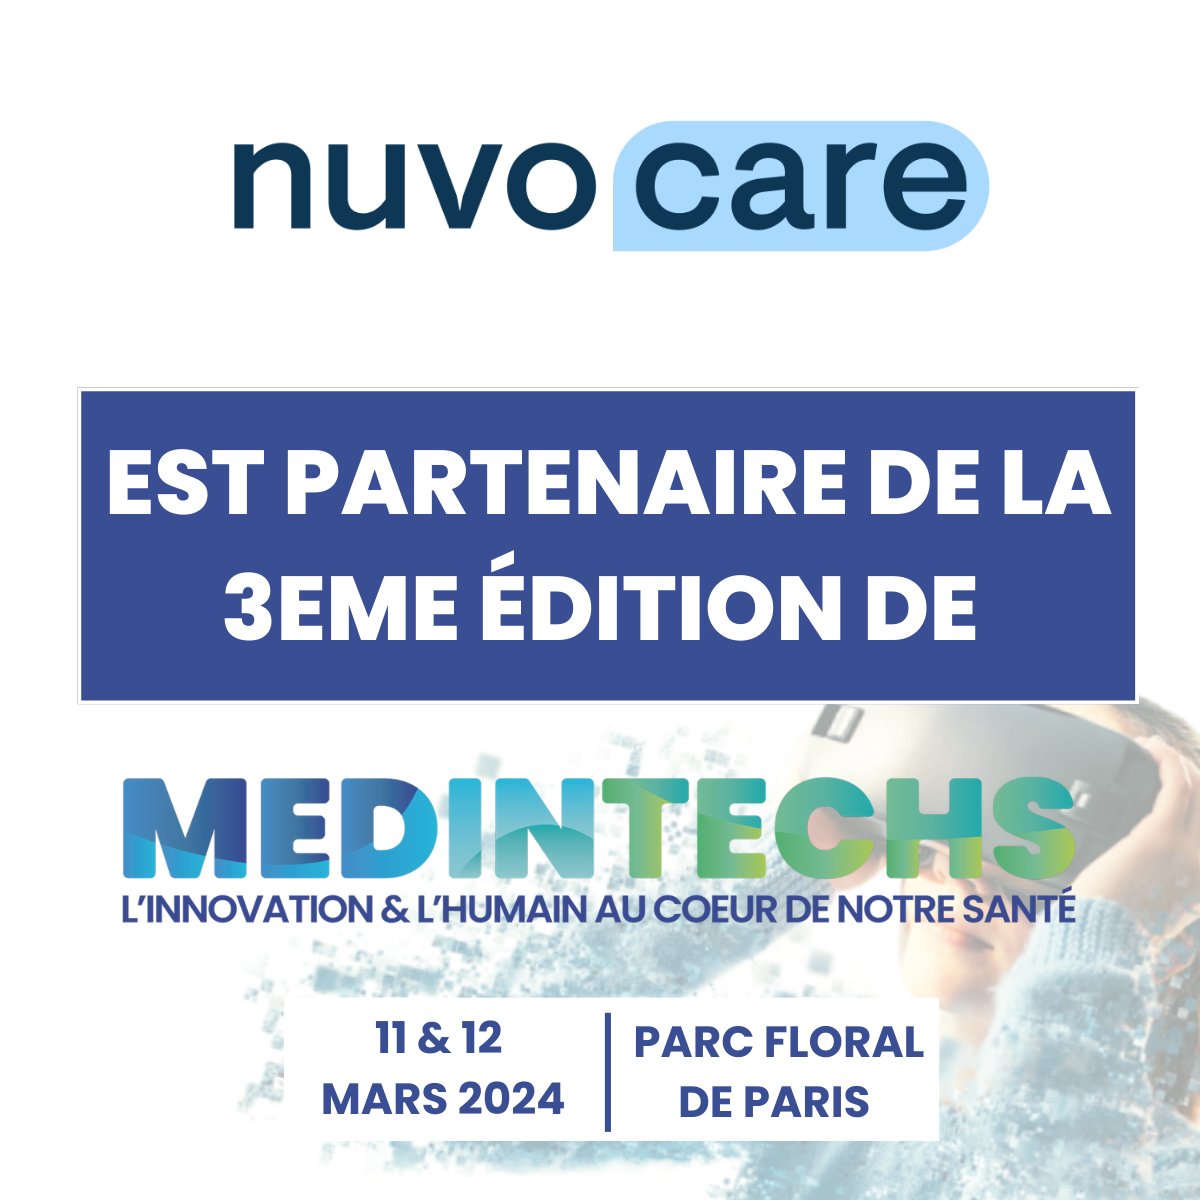 MedInTechs x Nuvocare : Améliorer la prise en charge des patients avant leurs opérations Nous sommes ravis d'annoncer notre partenariat avec Nuvocare, une plateforme numérique innovante au service des médecins et les établissements de santé !